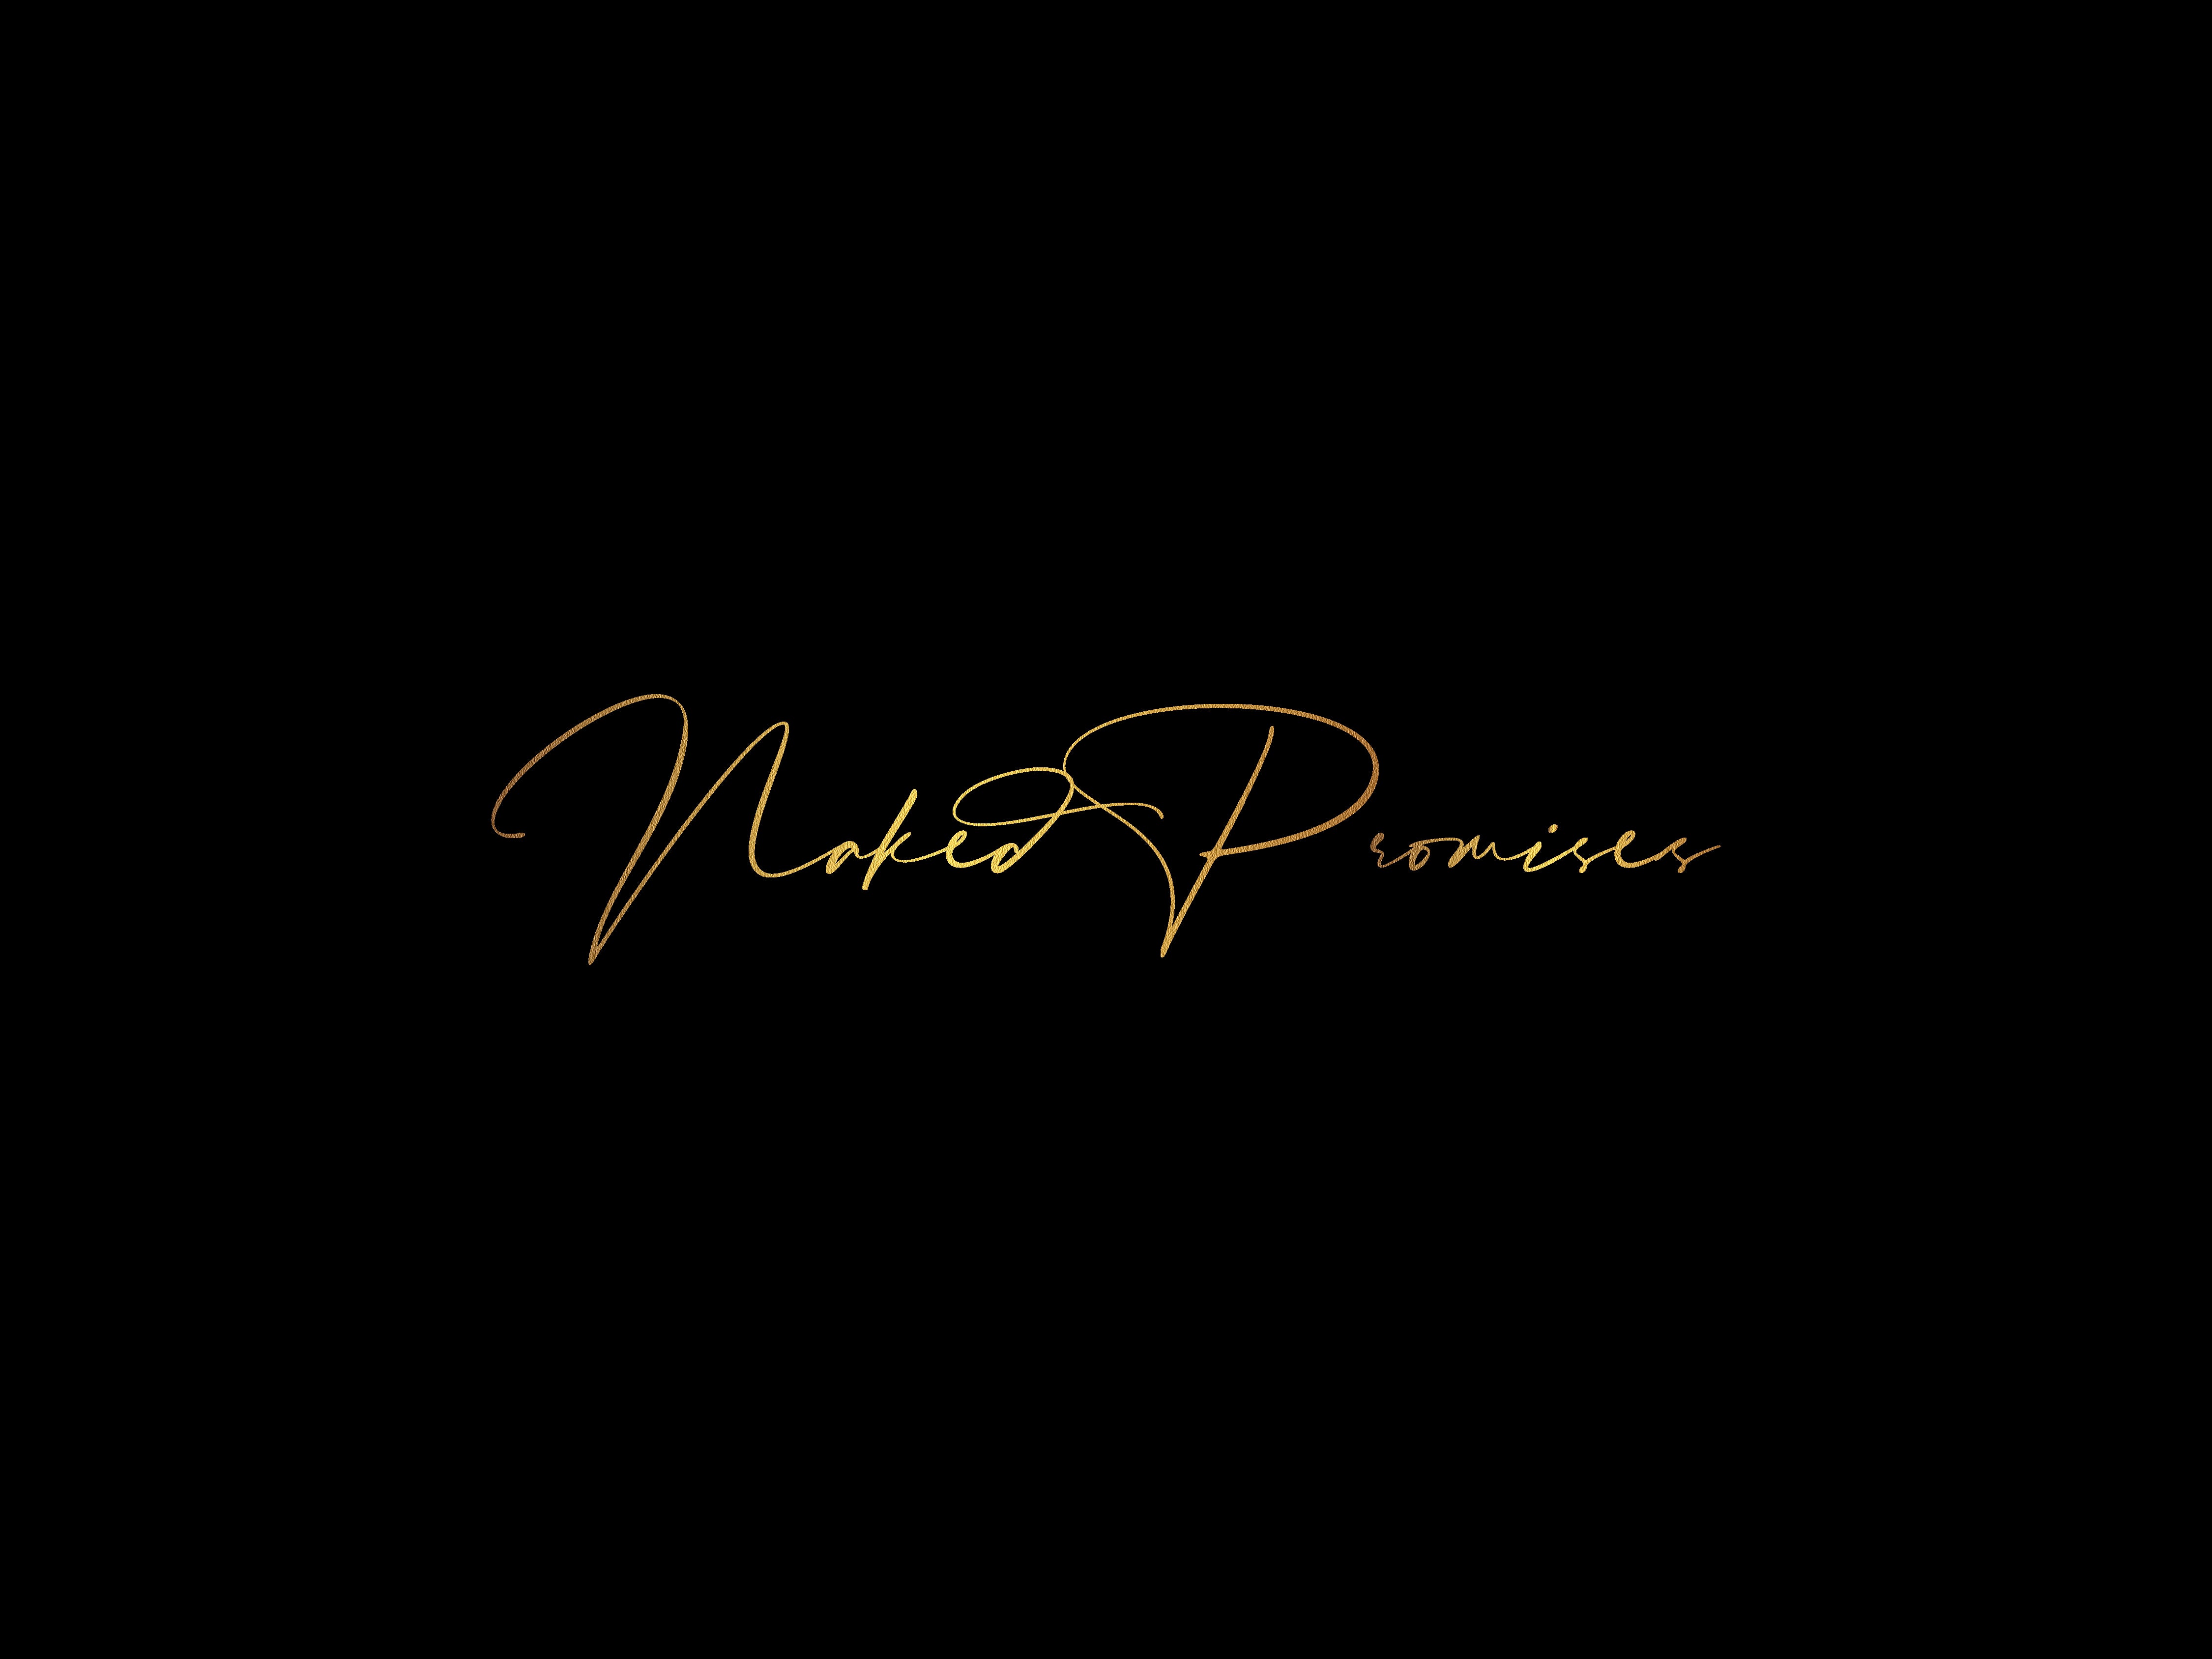 Naked Promises